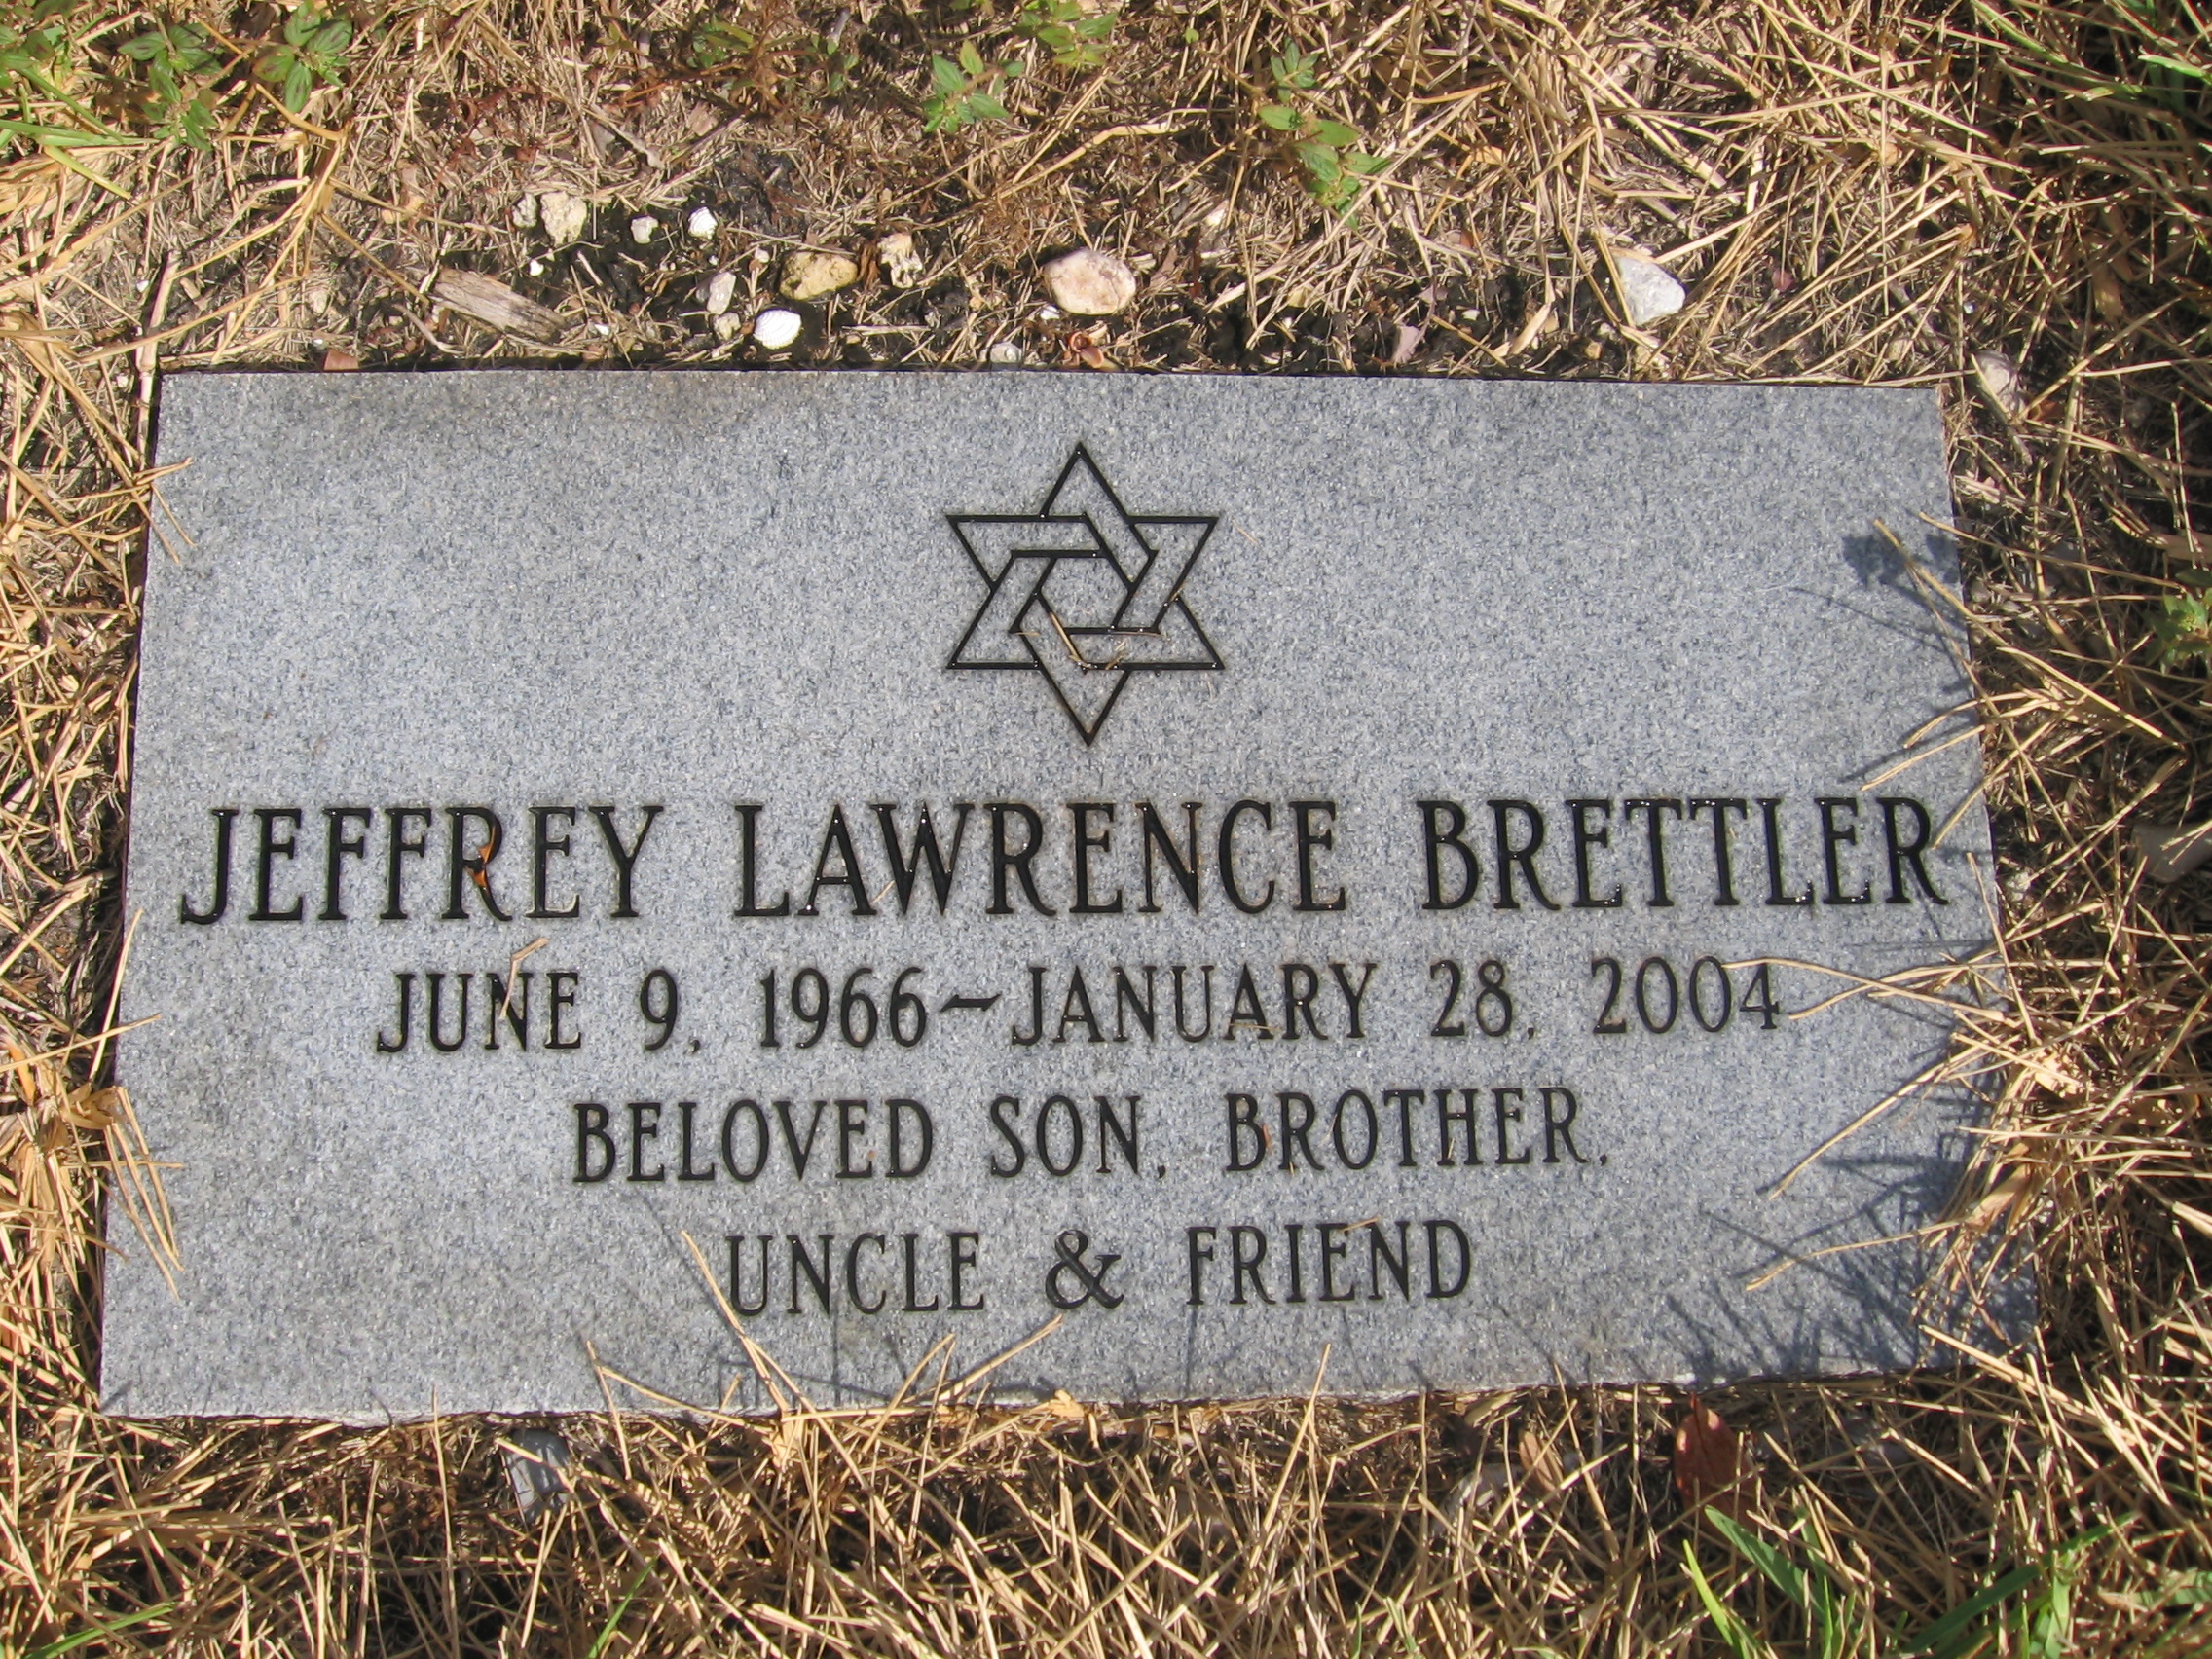 Jeffrey Lawrence Brettler